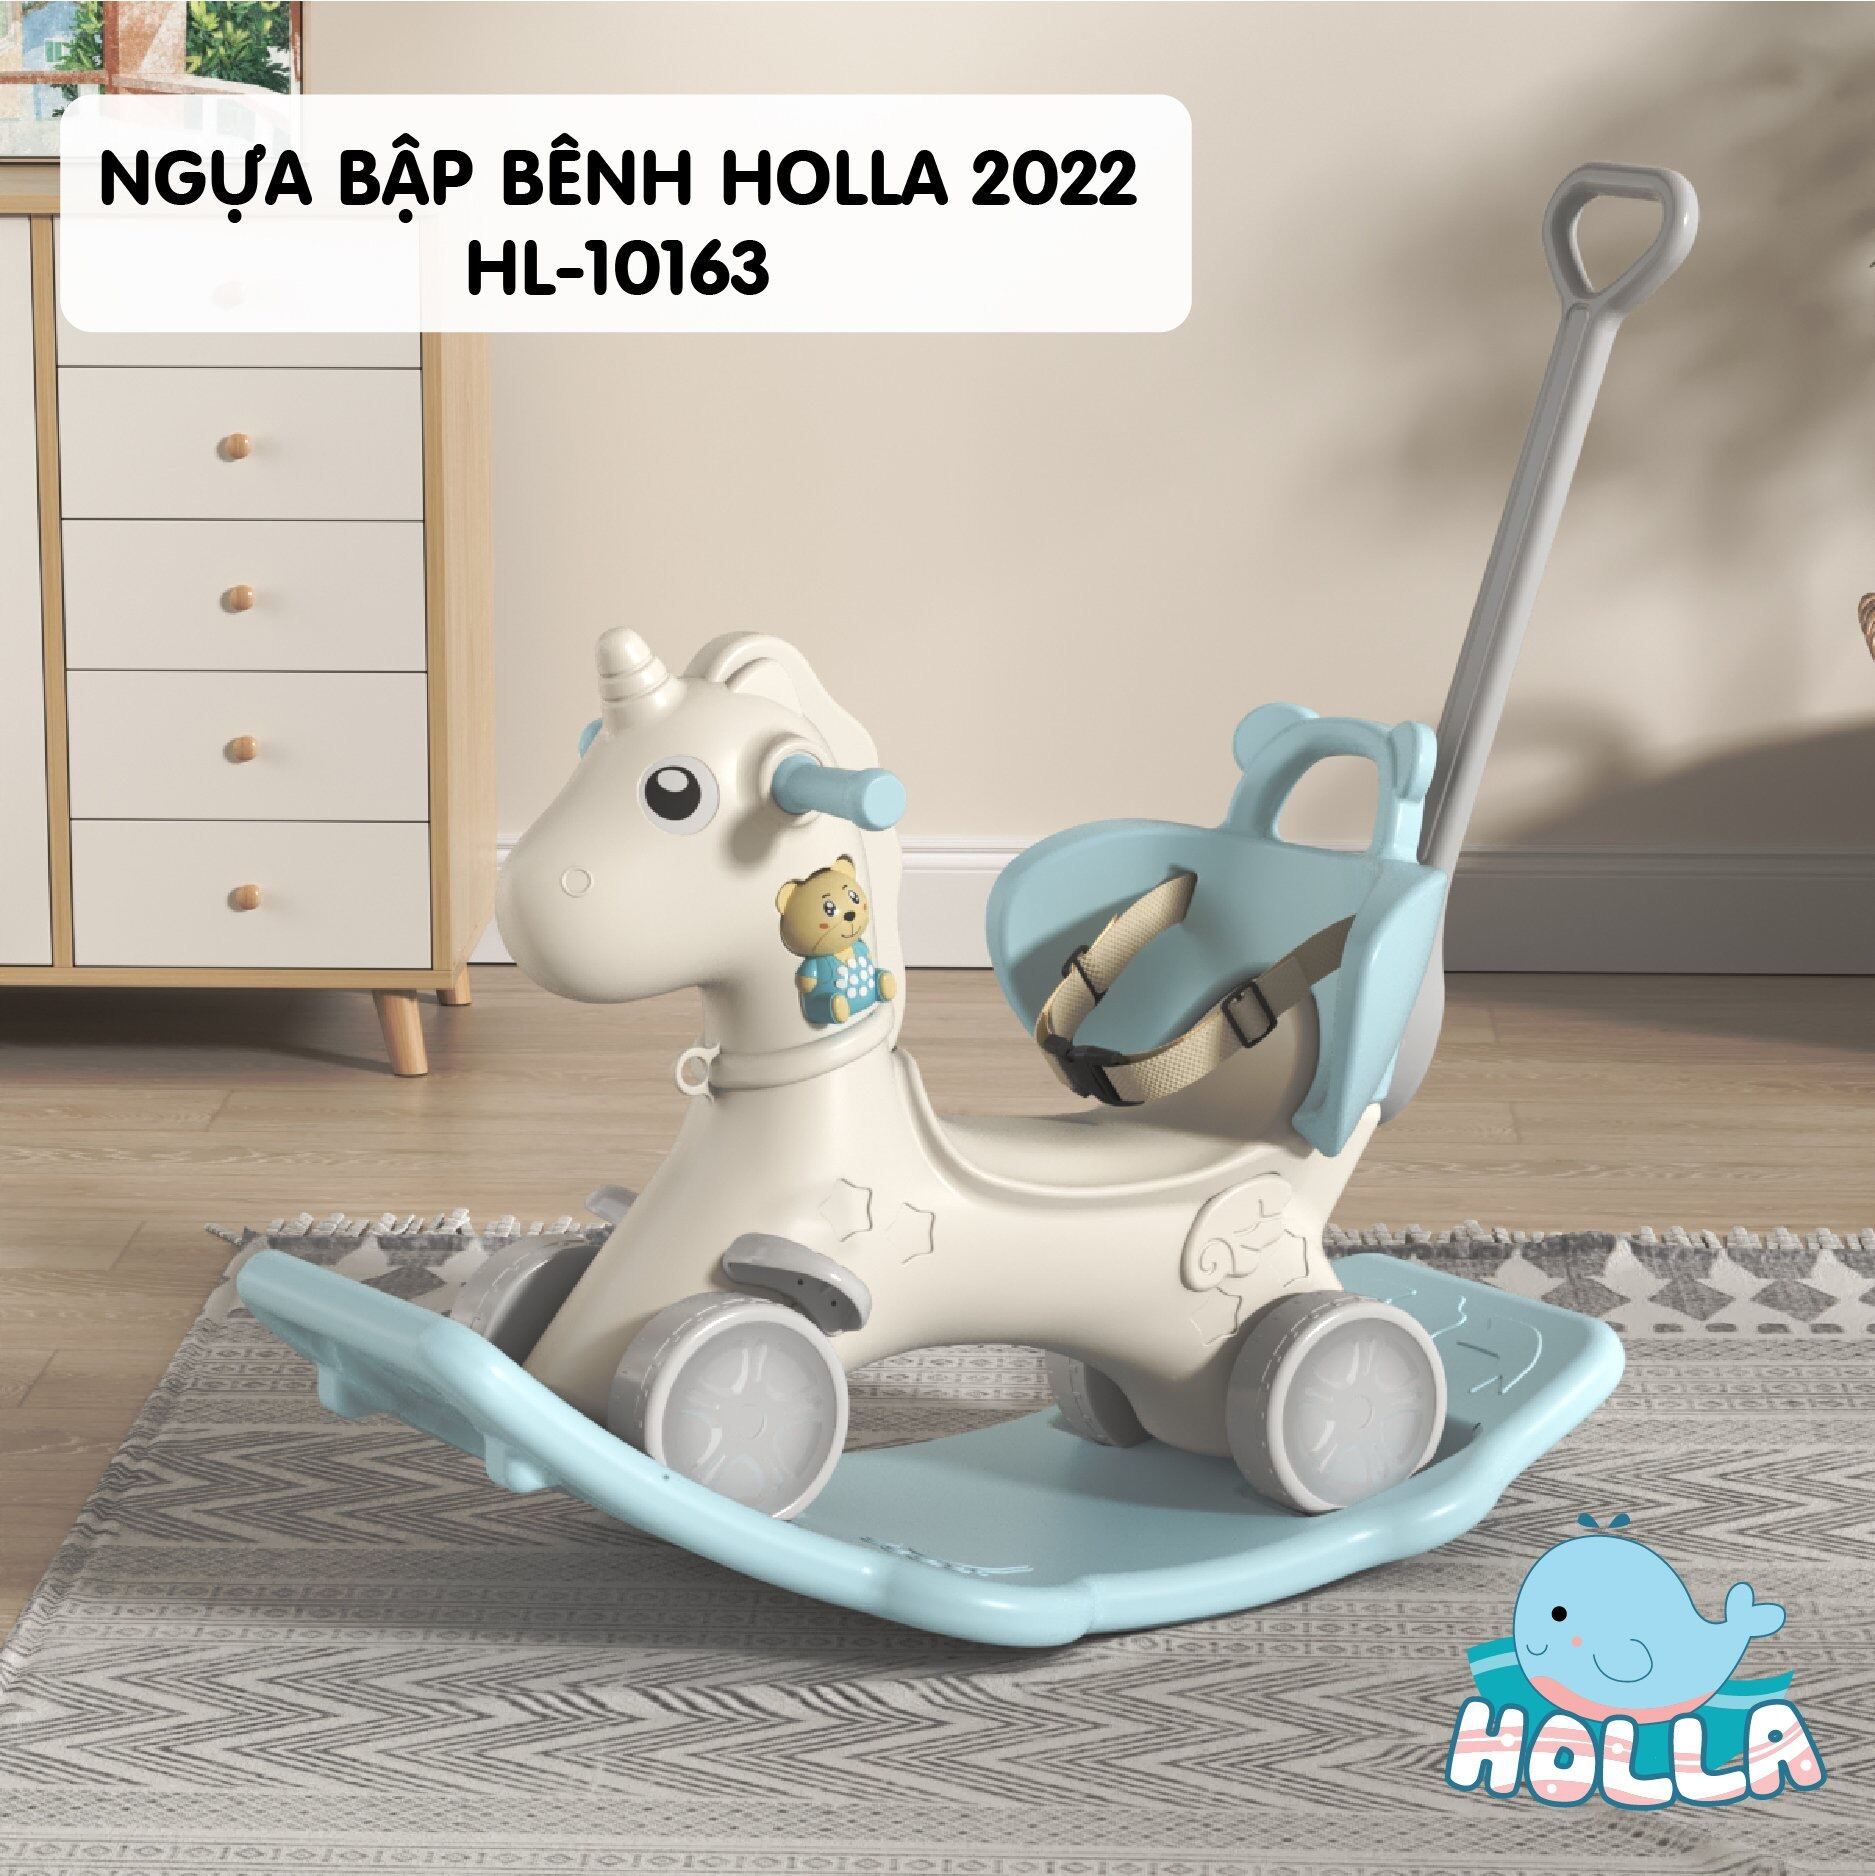 Ngựa bập bênh Holla 2022 HL-10163 |YOYO99